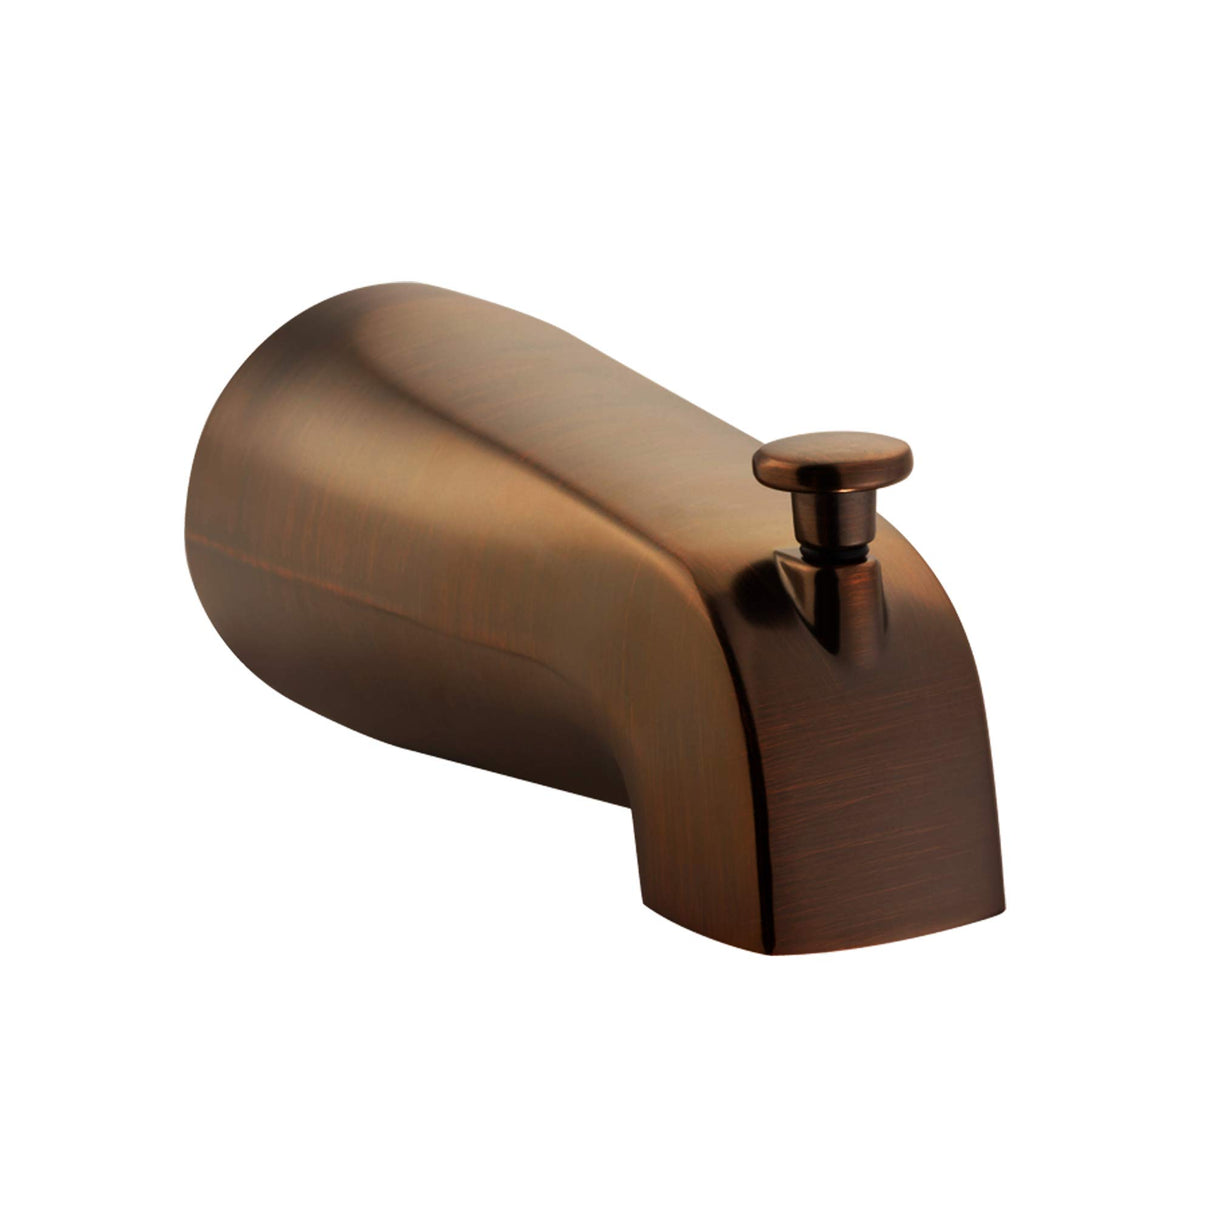 PULSE ShowerSpas 3010-TS-ORB Bathtub Spout Valve with Diverter, 1/2" Slip Fit Connection, Oil-Rubbed Bronze